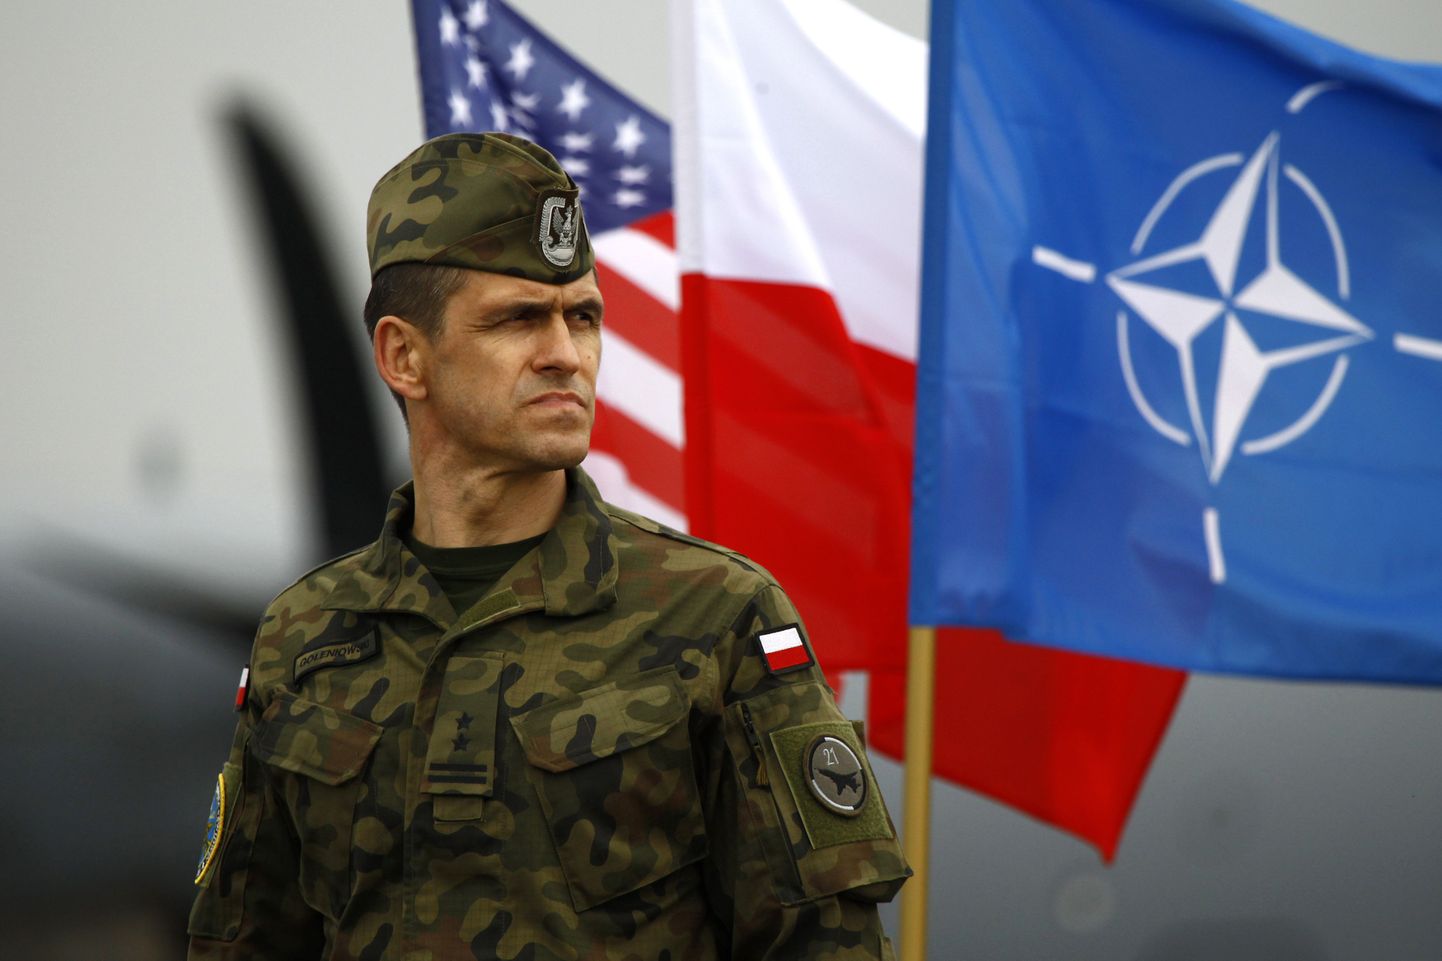 Poola sõdur USA, Poola ja NATO lippude ees.